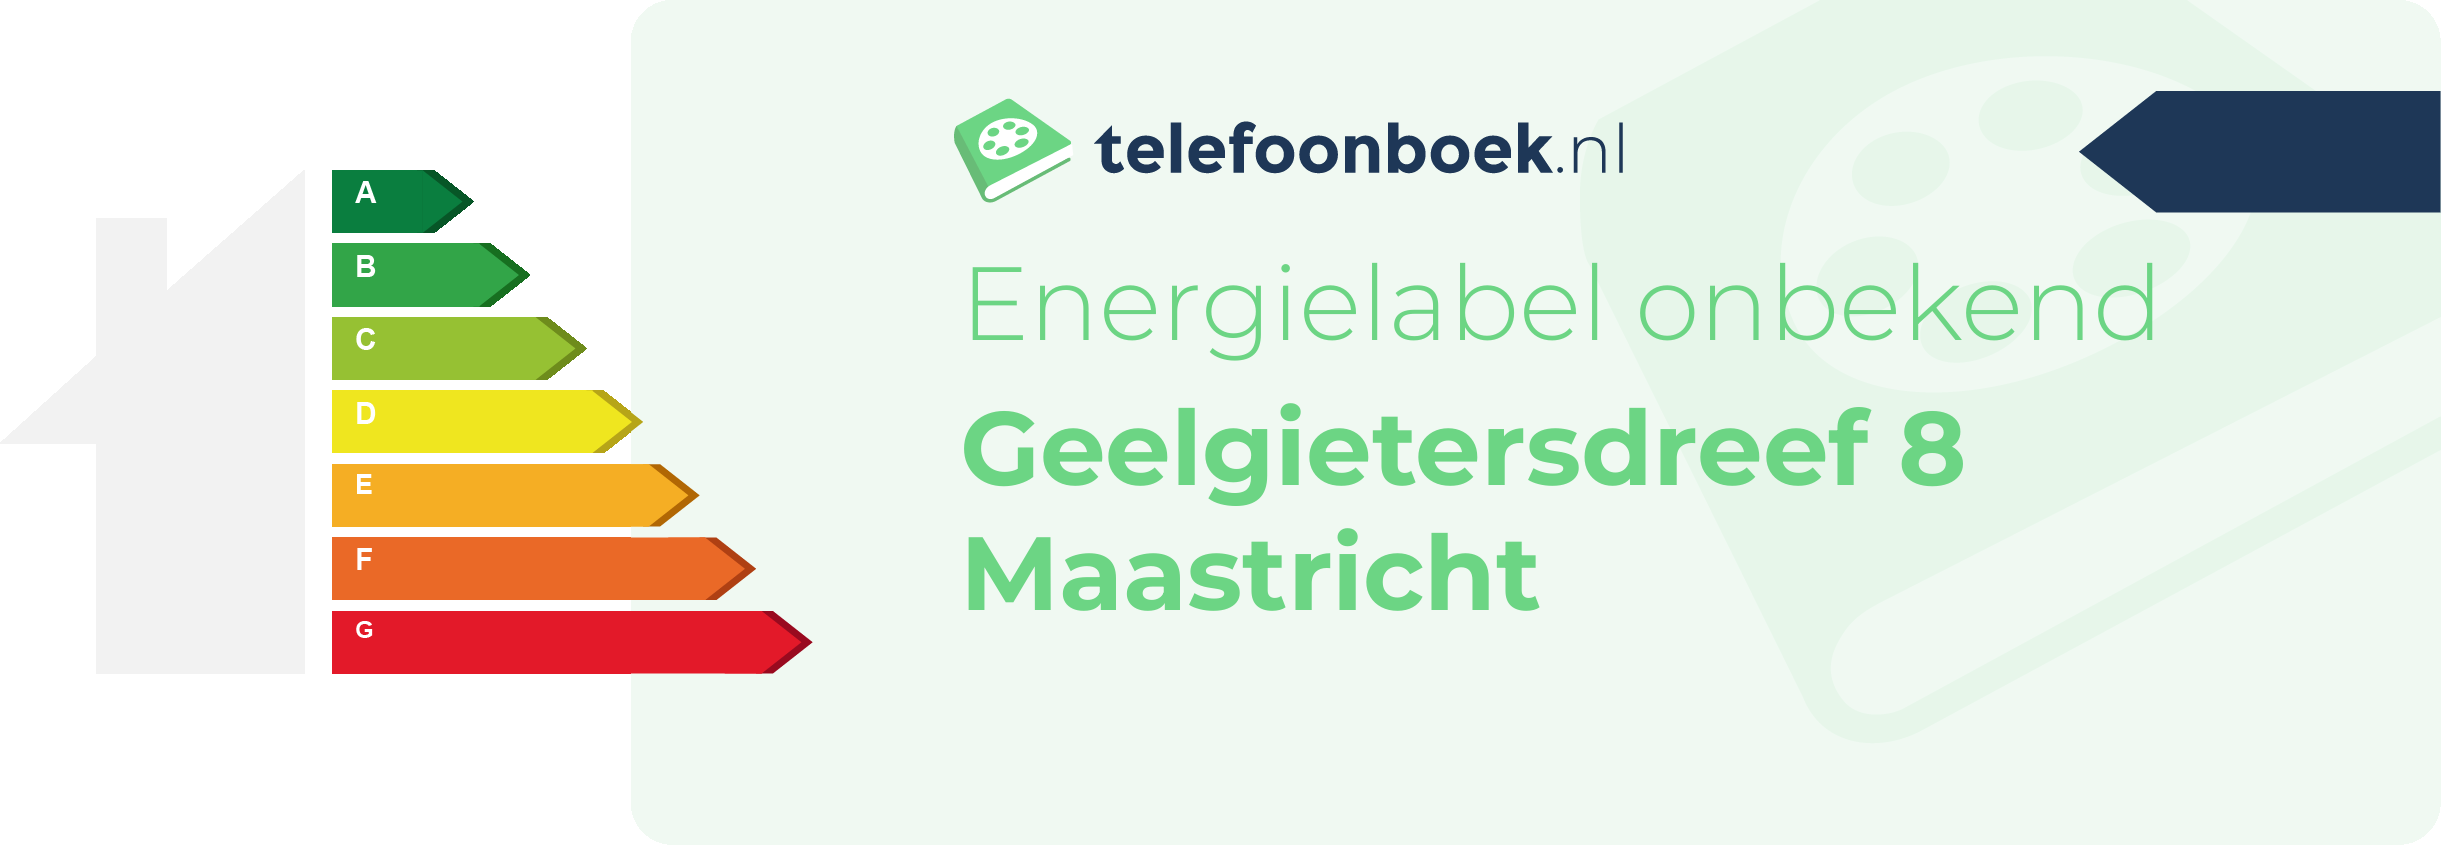 Energielabel Geelgietersdreef 8 Maastricht